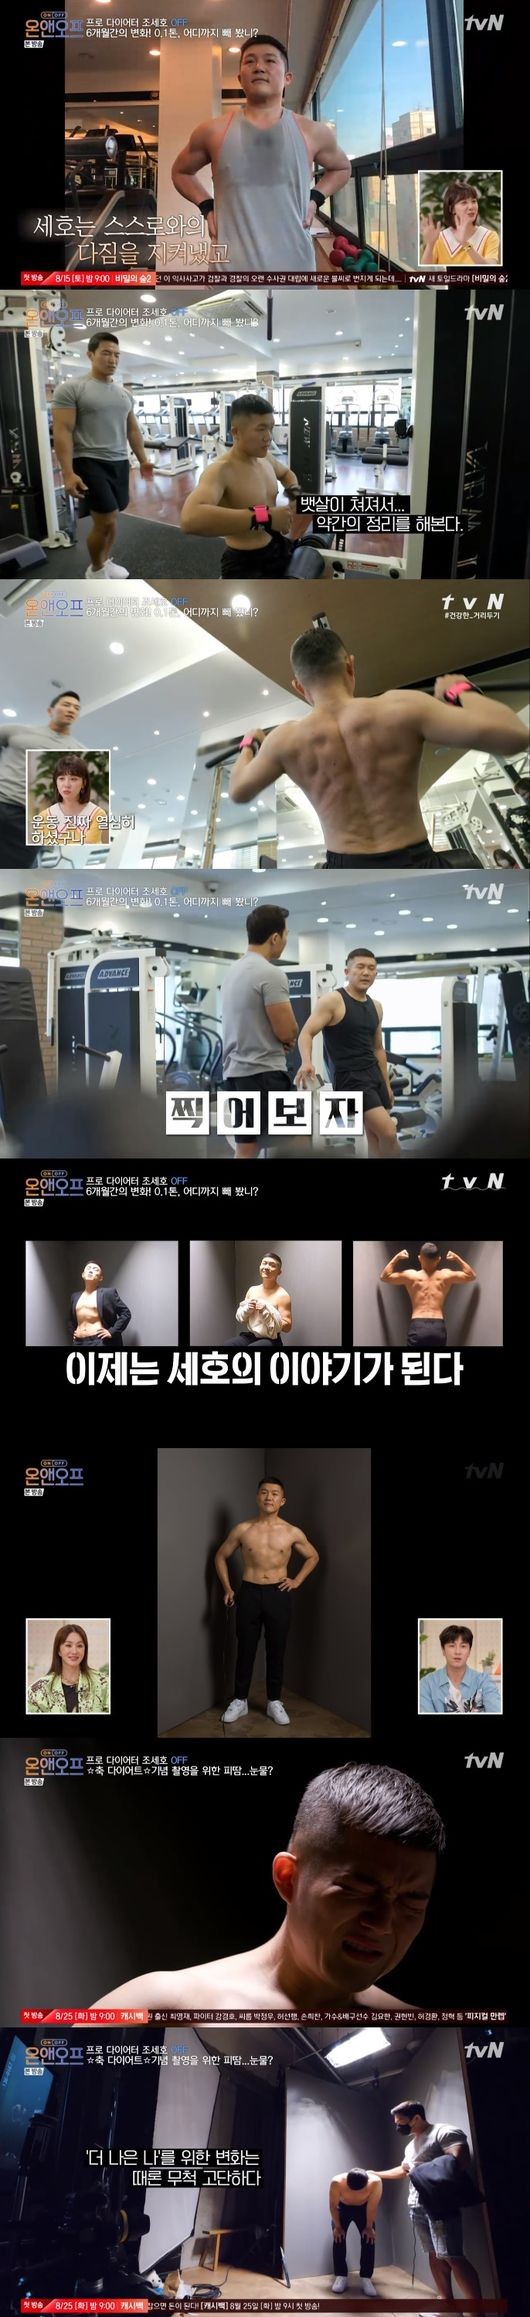 '온앤오프' 조세호, 6개월 만에 30kg 감량.."사실 너무 힘들었다" 고백 [종합]